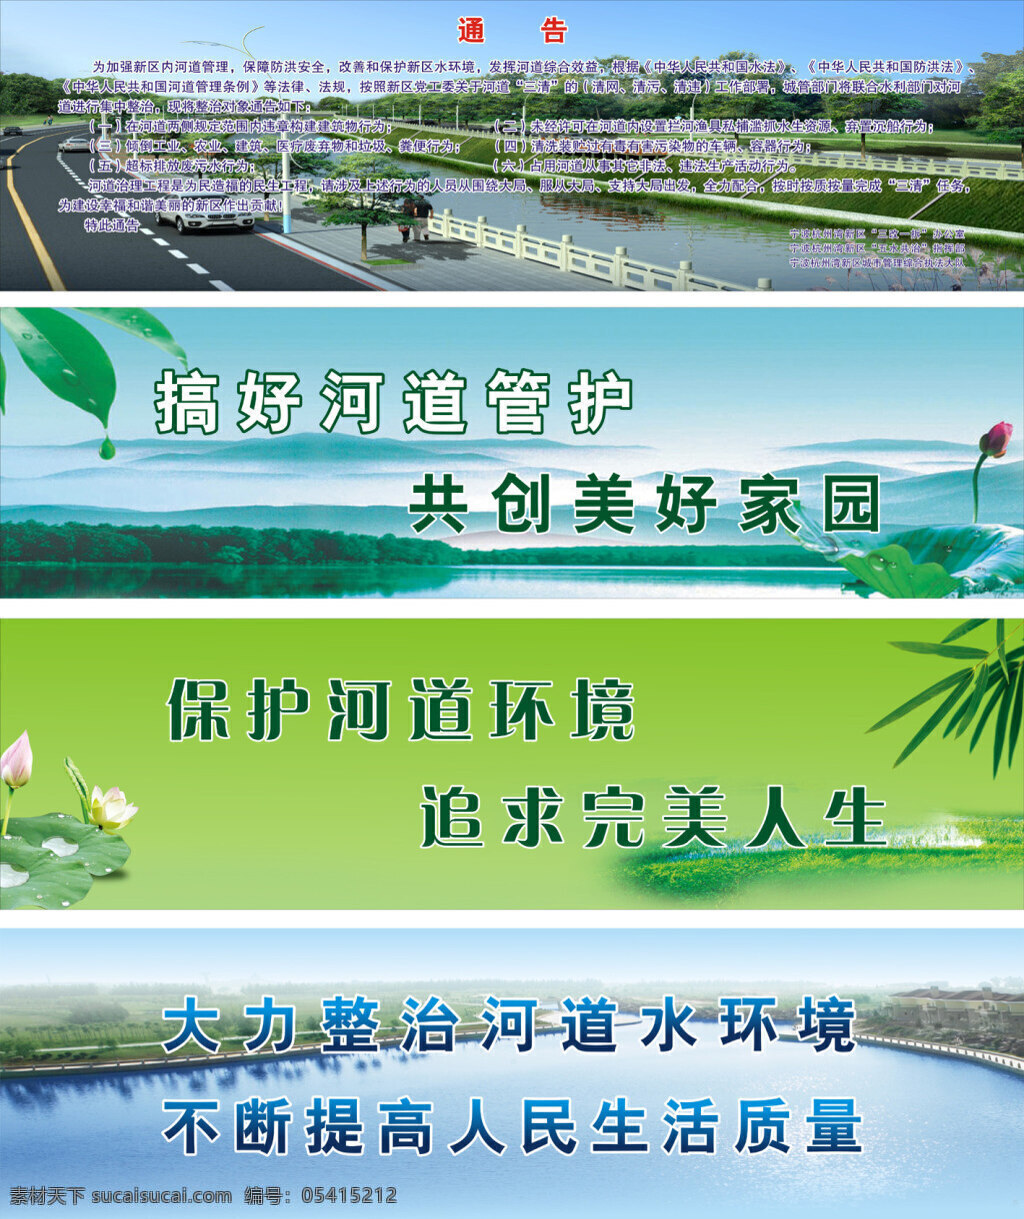 五 水 共 治 标语 画面 五水共治 环保 保护环境 河道 生态 绿色